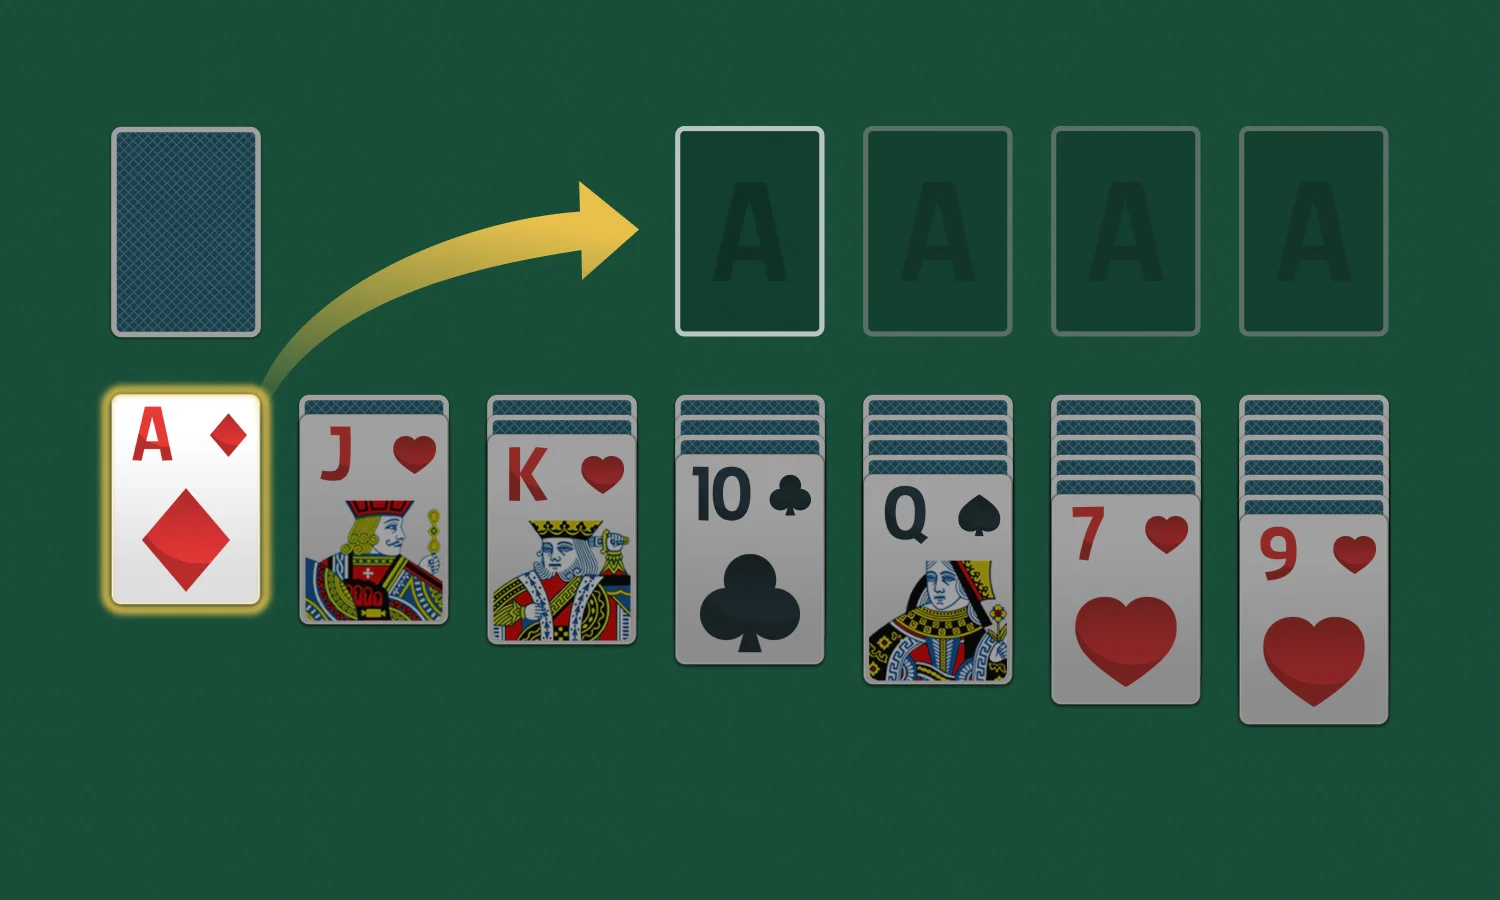 Comment jouer au Solitaire: Déplacer les cartes vers les piles de fondation